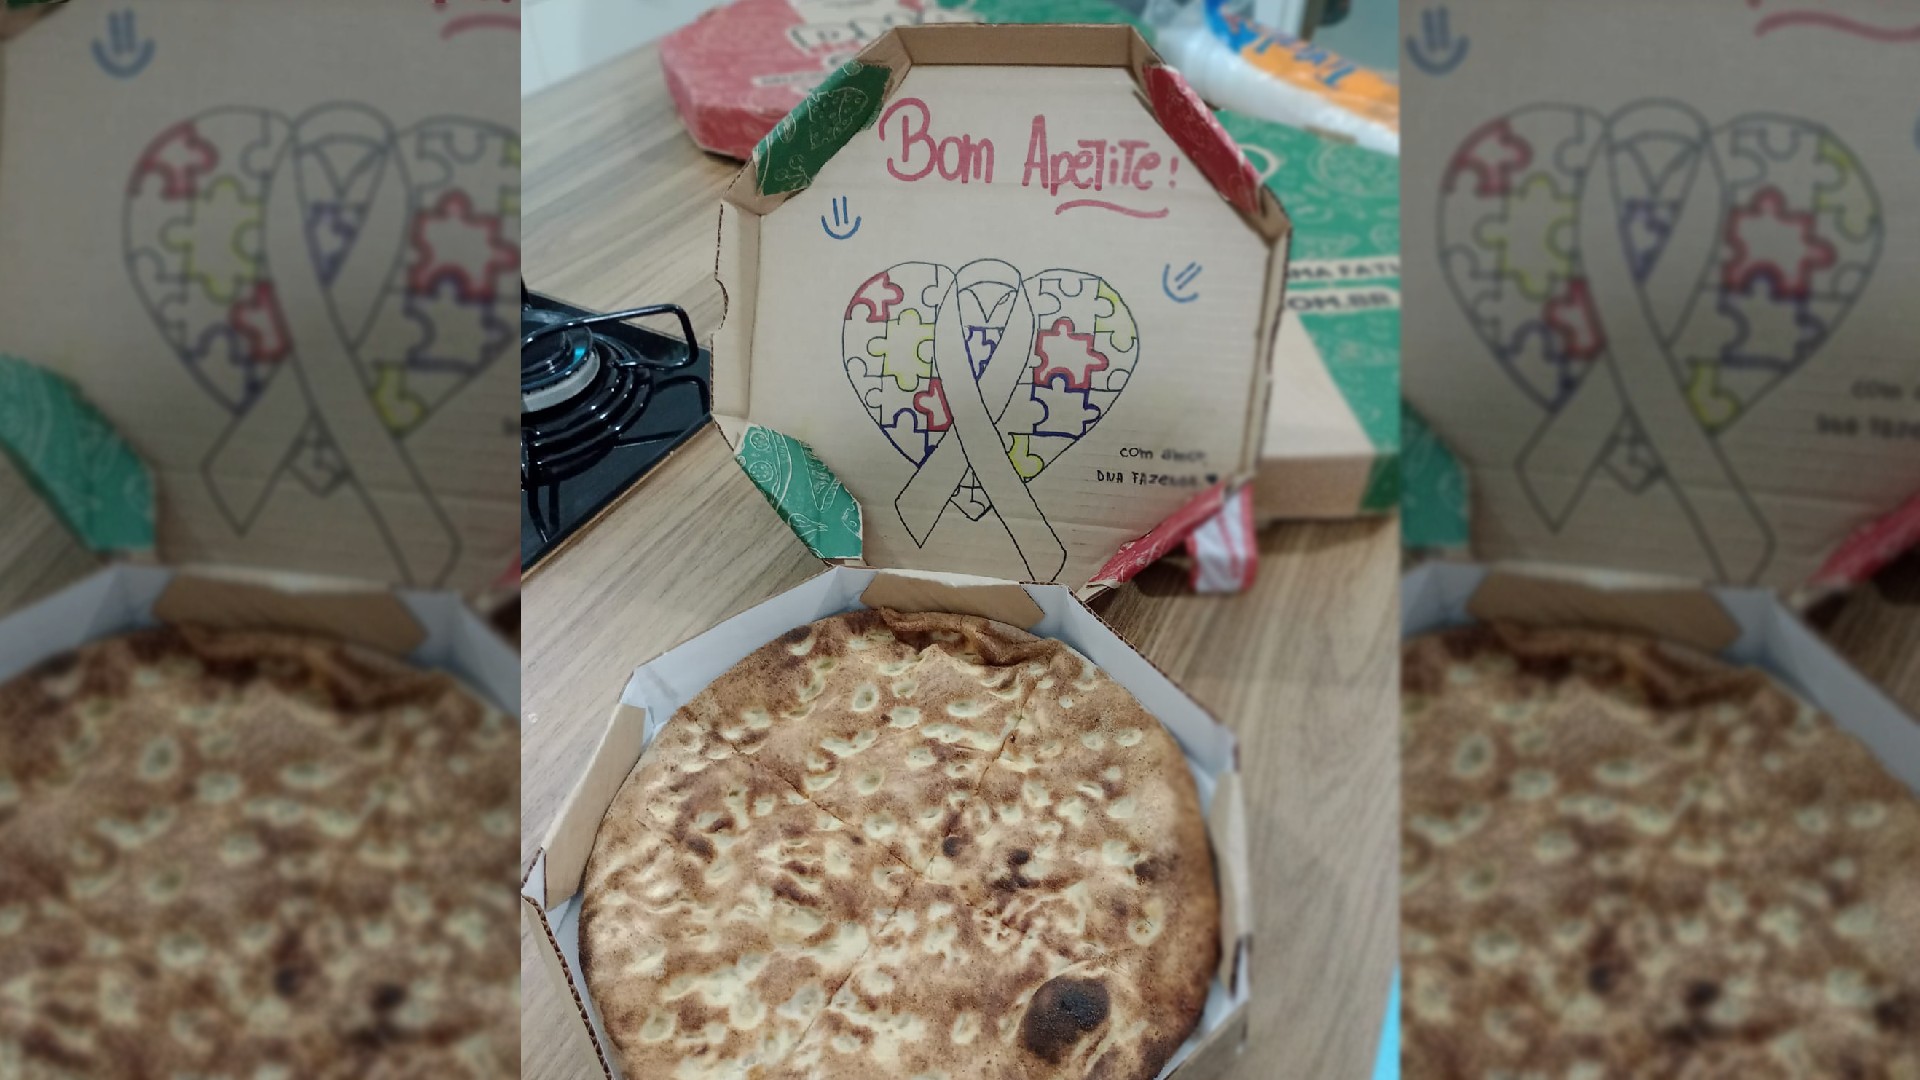 Pizzaria manda massa sem recheio para criança autista e emociona família do Paraná: 'Carinho enorme'